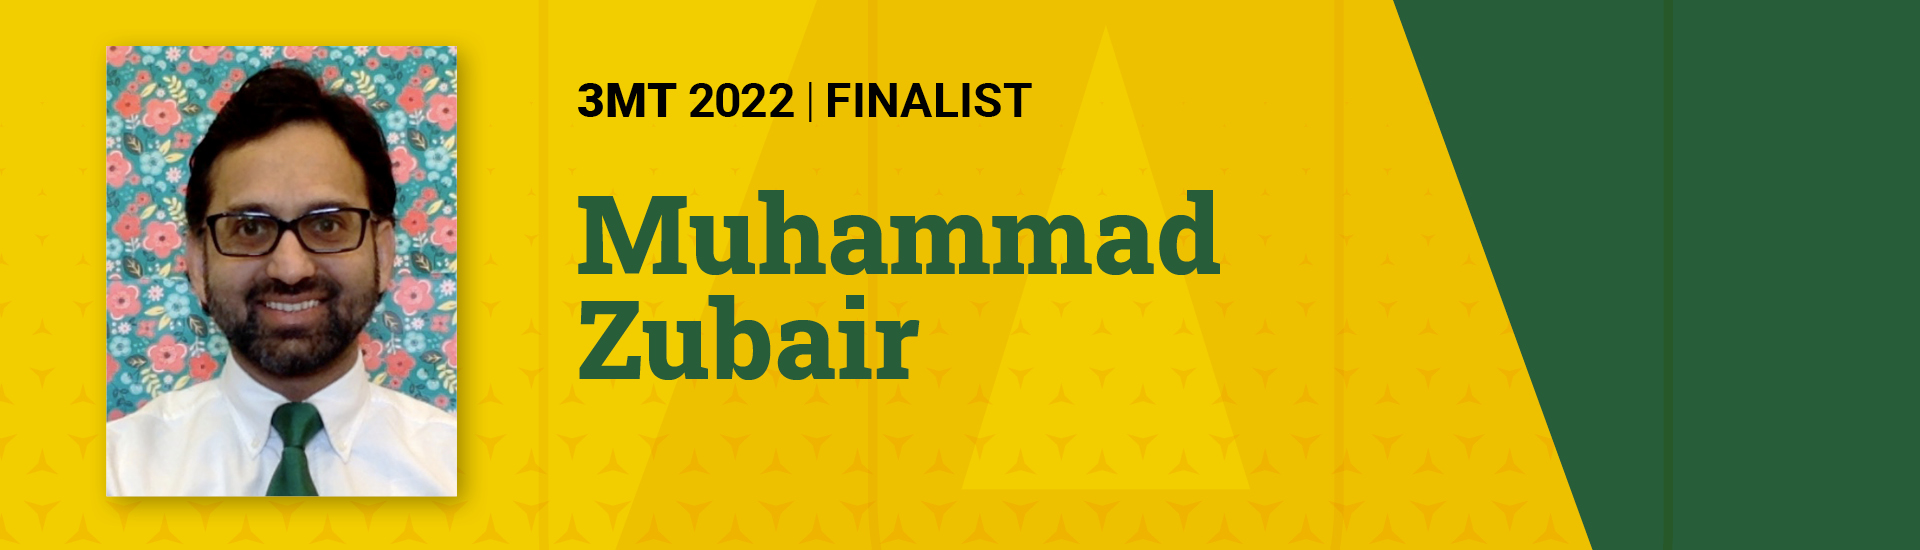 3MT 2022 Finalist Muhammad Zubair